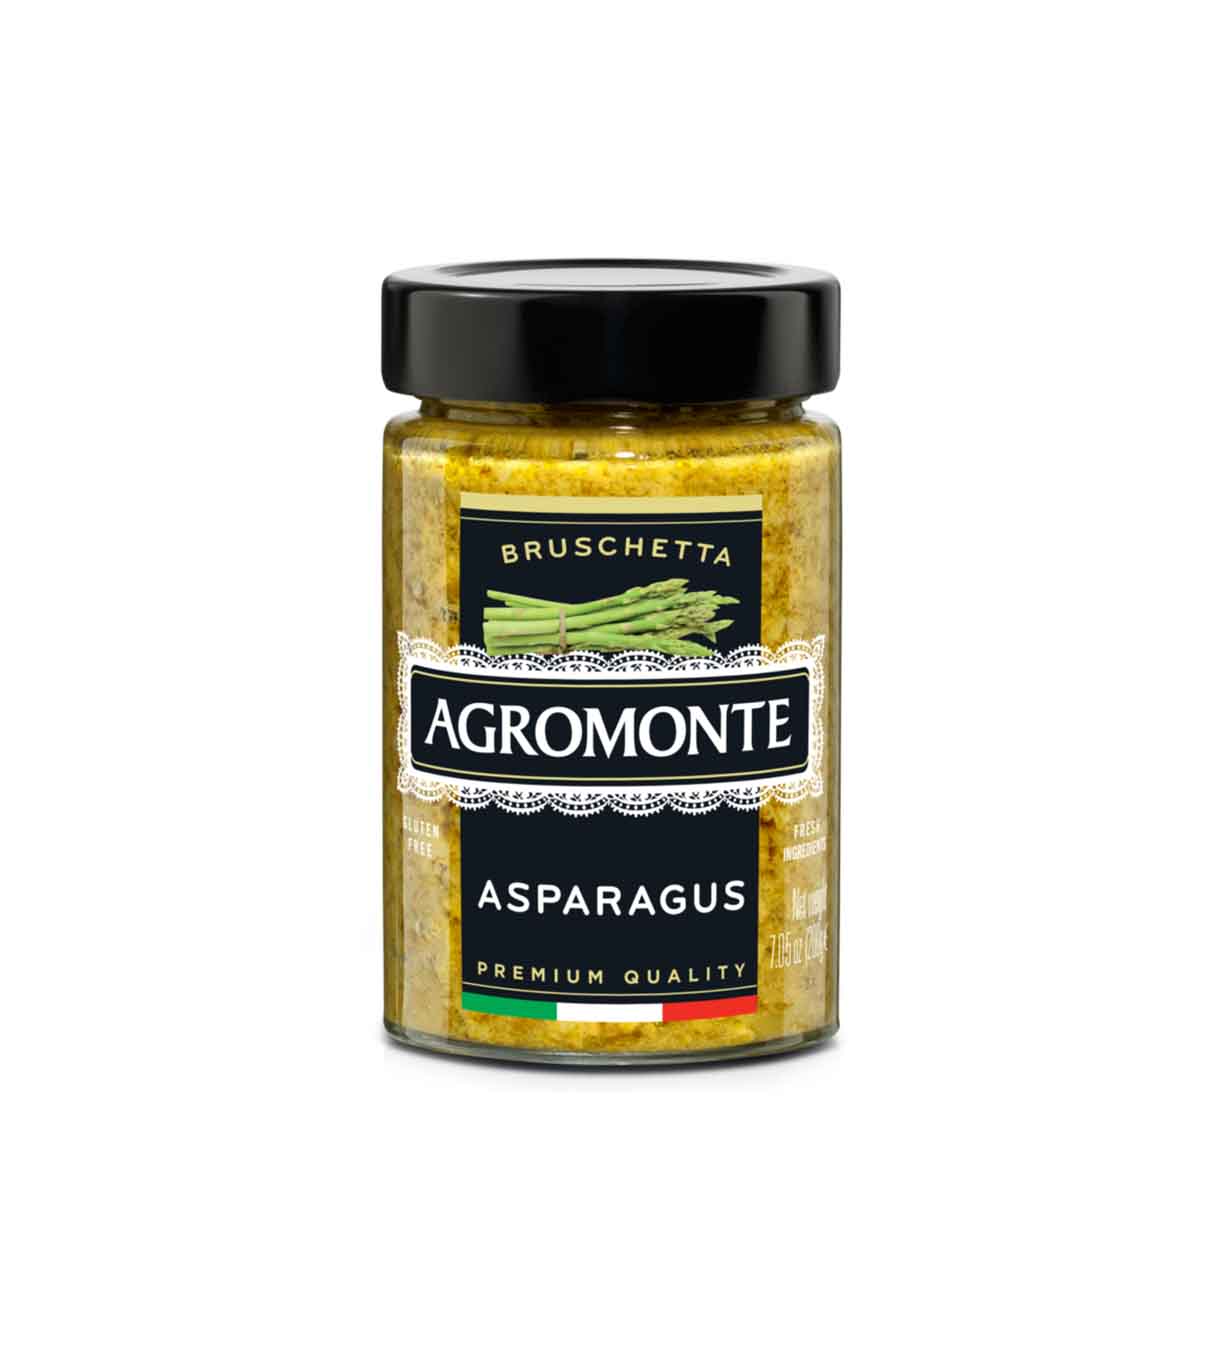 Bruschetta aux asperges Agromonte